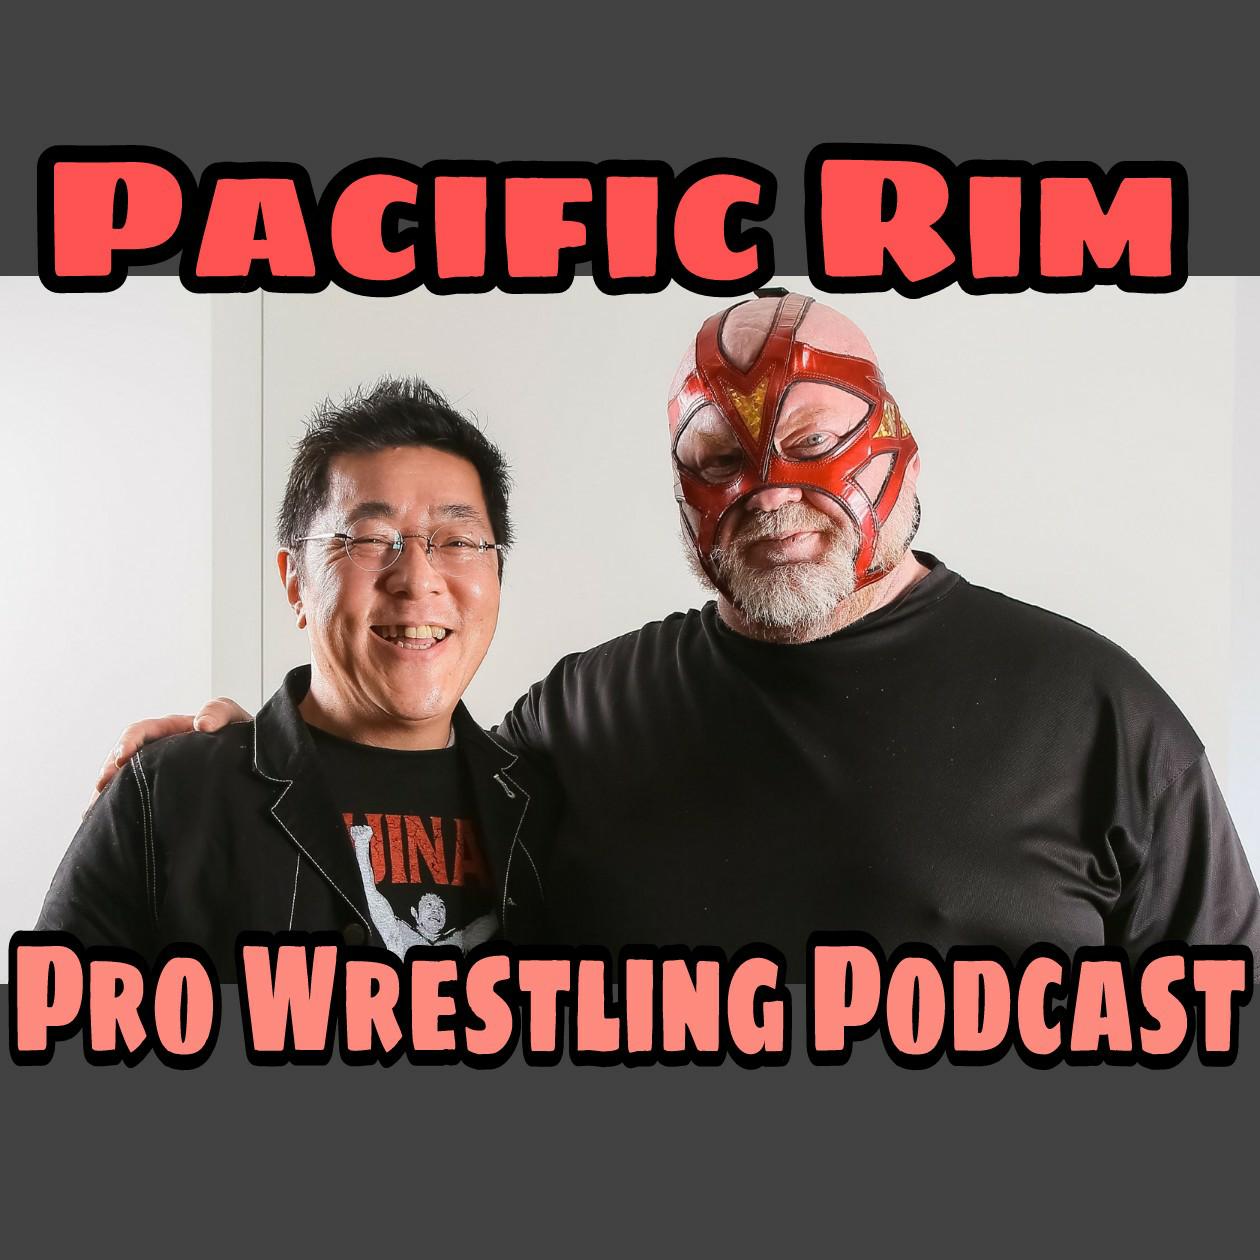 Pacific Rim Pro Wrestling Podcast Episode #27